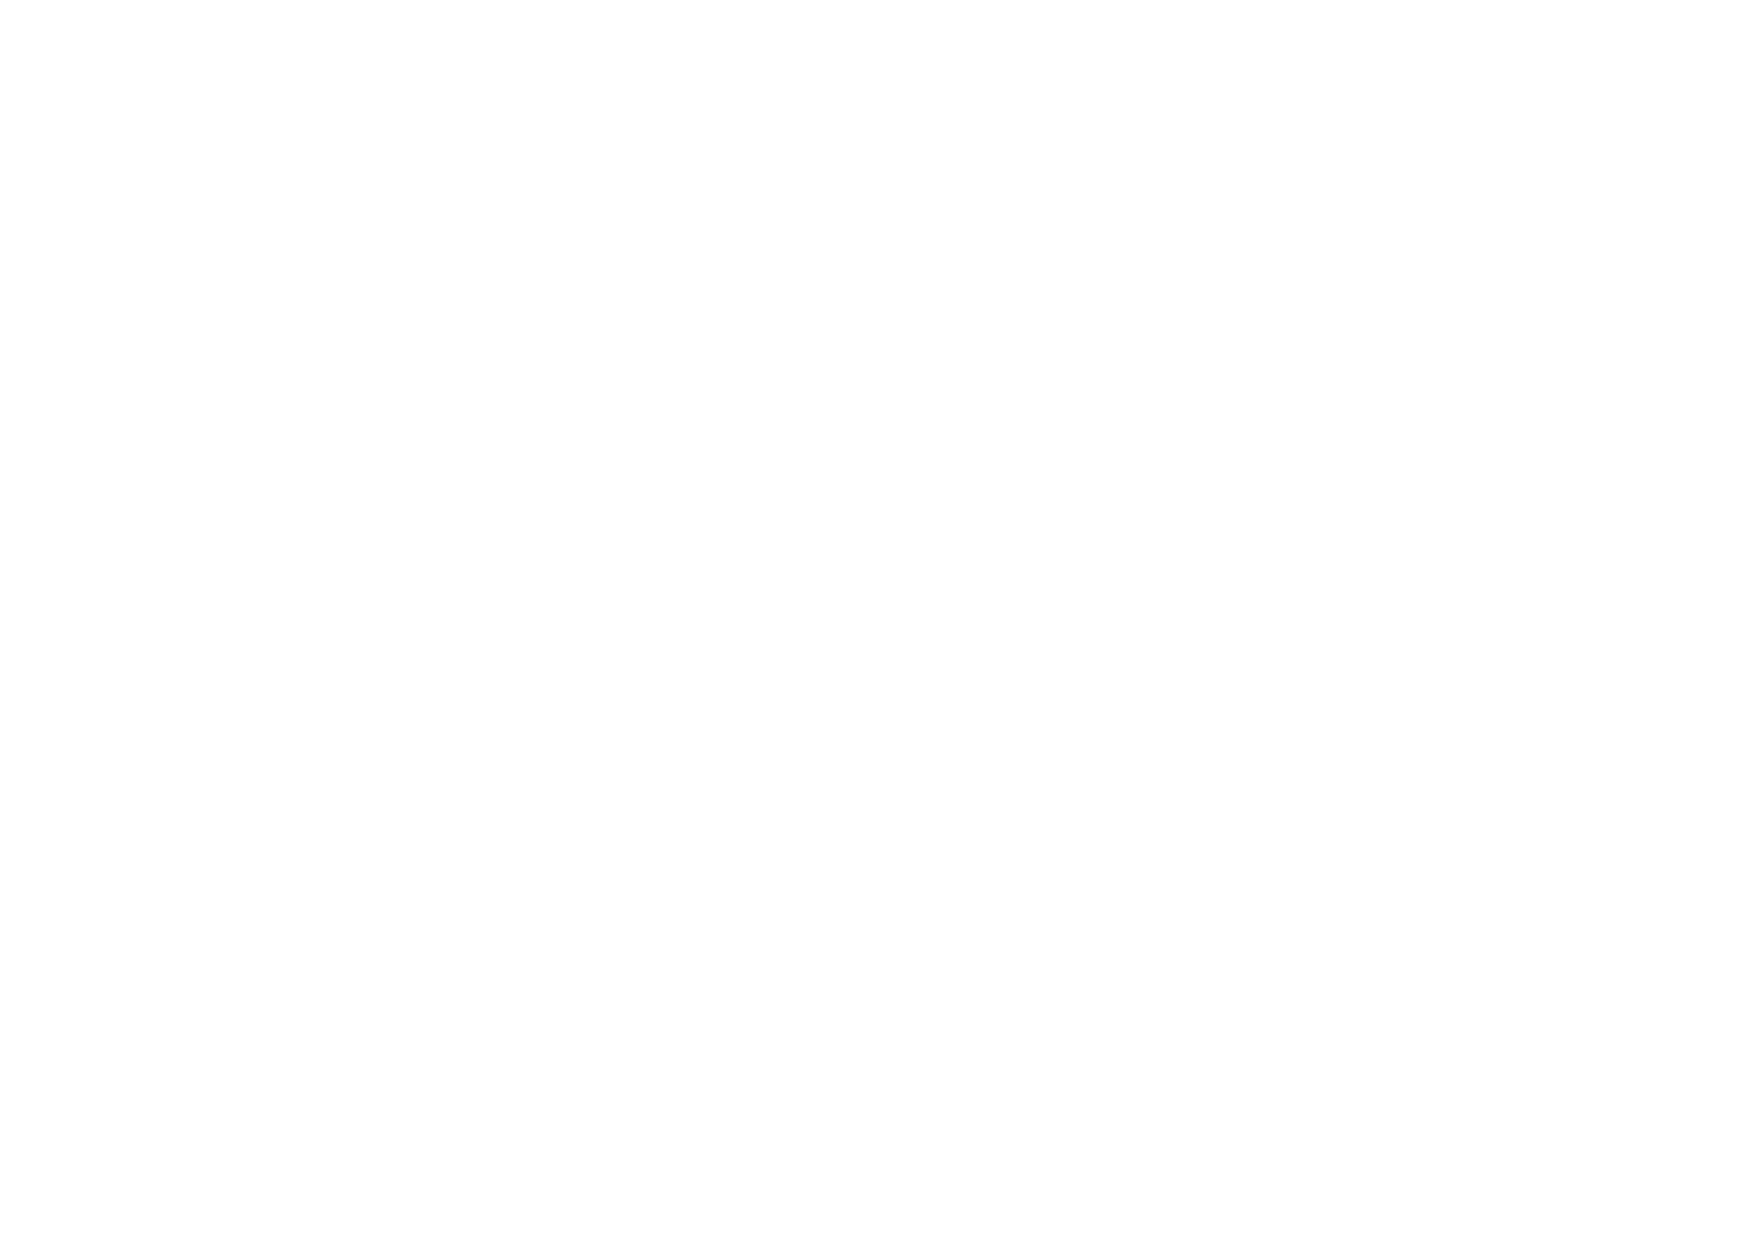 Logo del plato de ducha Neobath de Securibath